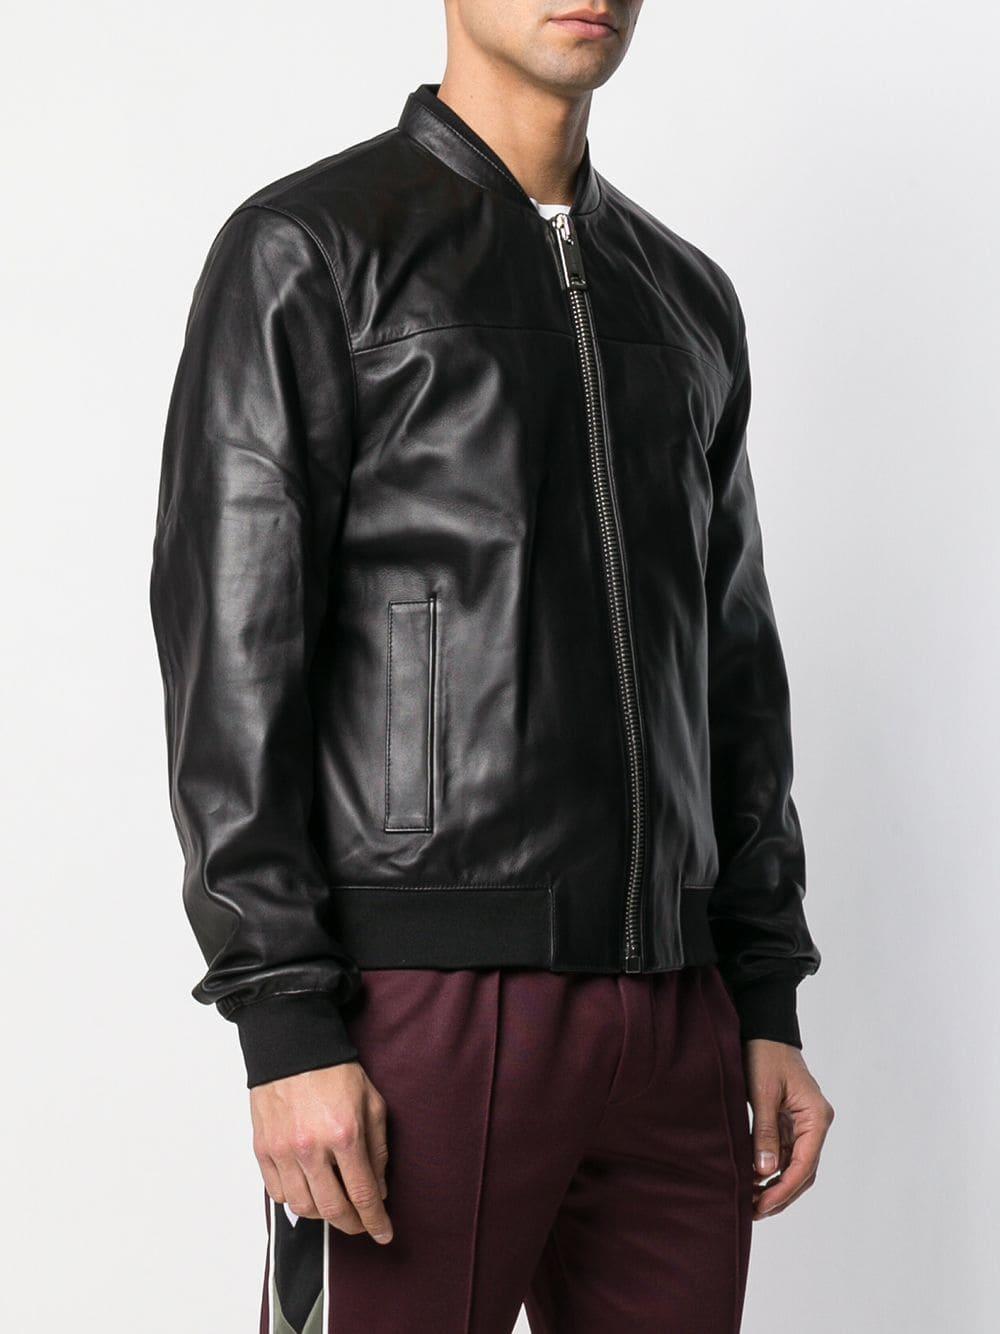 Les Hommes Leather Bomber Jacket in Black for Men - Lyst